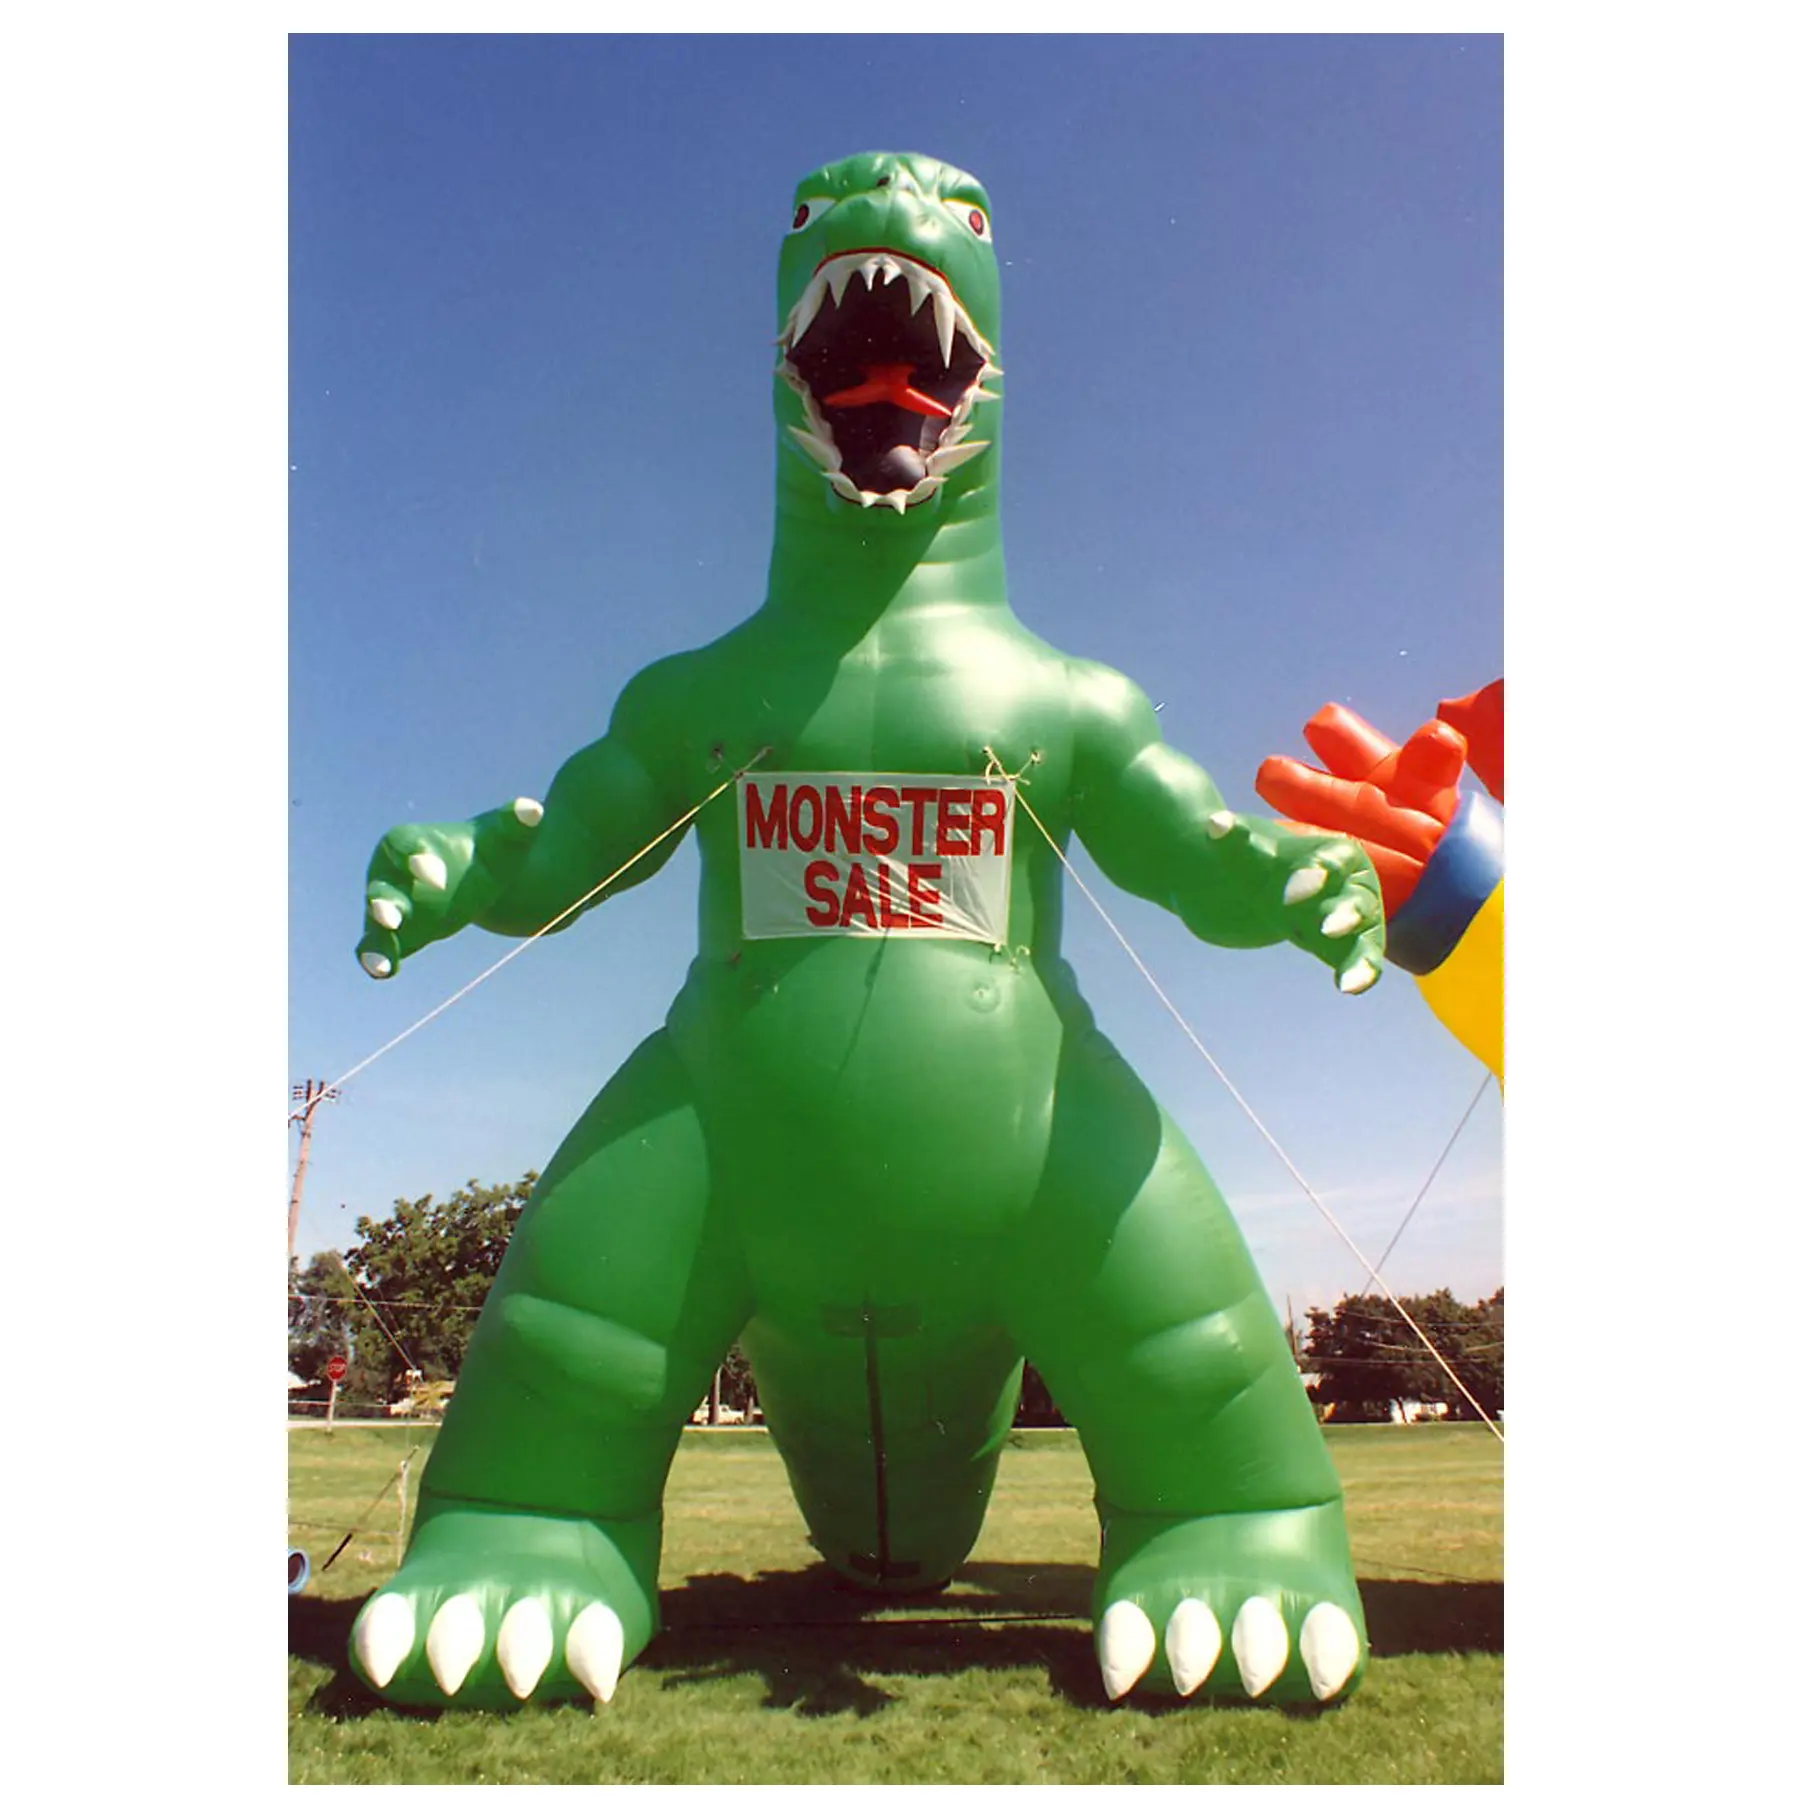 20ft Cao Lớn Inflatable Godzilla Khủng Long/Bơm Hơi Khổng Lồ Quái Vật Cho Bán